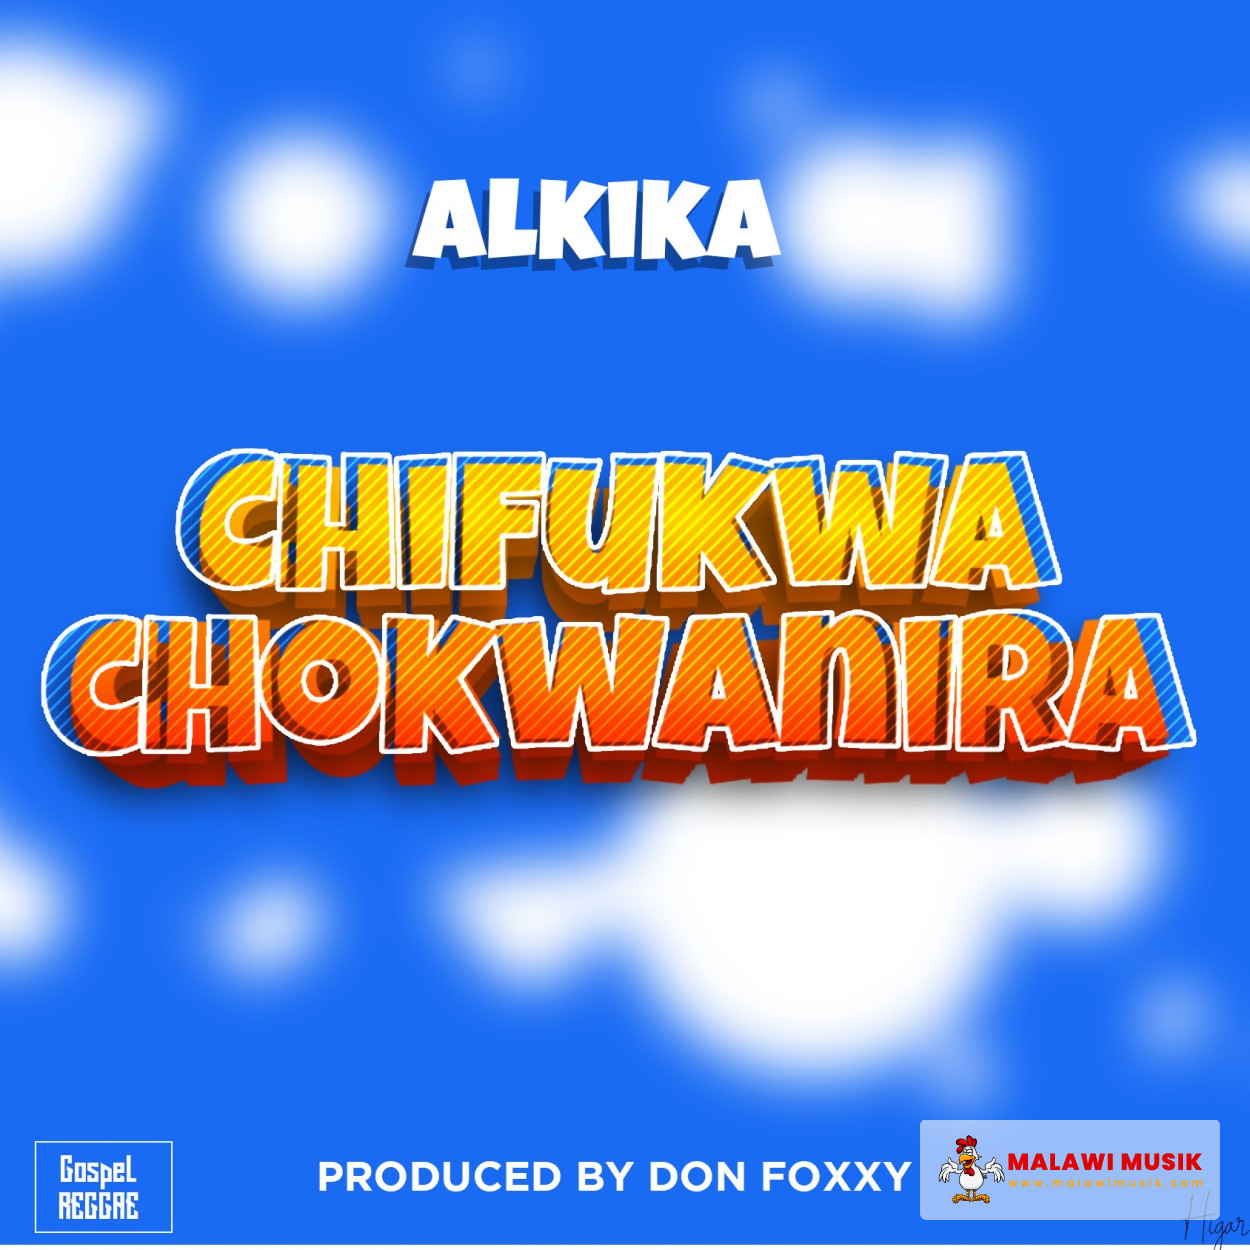 Alkika - Chifukwa Chokwanira (Prod. Don Foxxy)